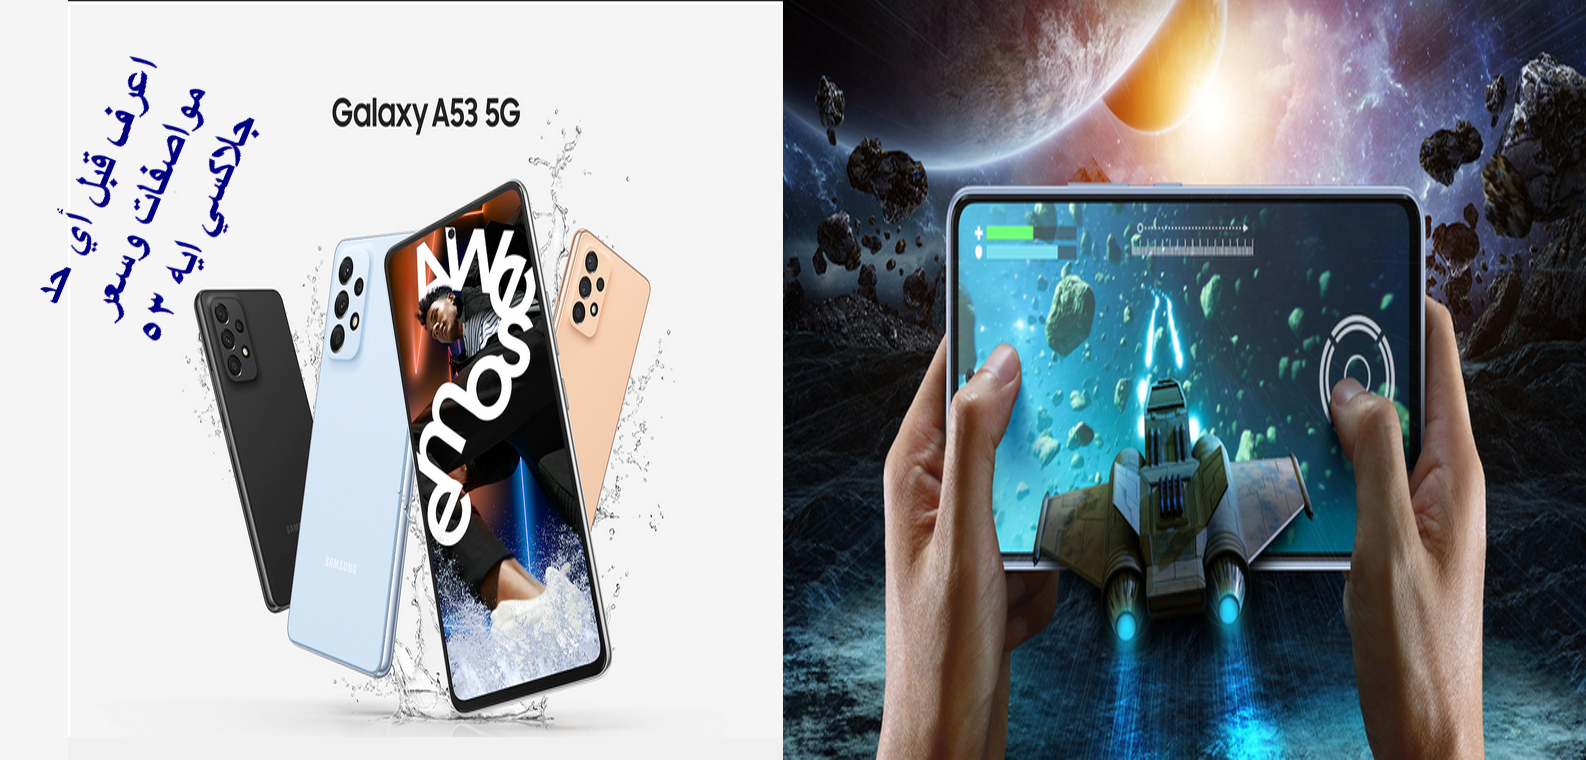 سعر Samsung Galaxy A53 5G الجديد / دلع نفسك واقتني أحدث منتجات سامسونج وبأقل سعر